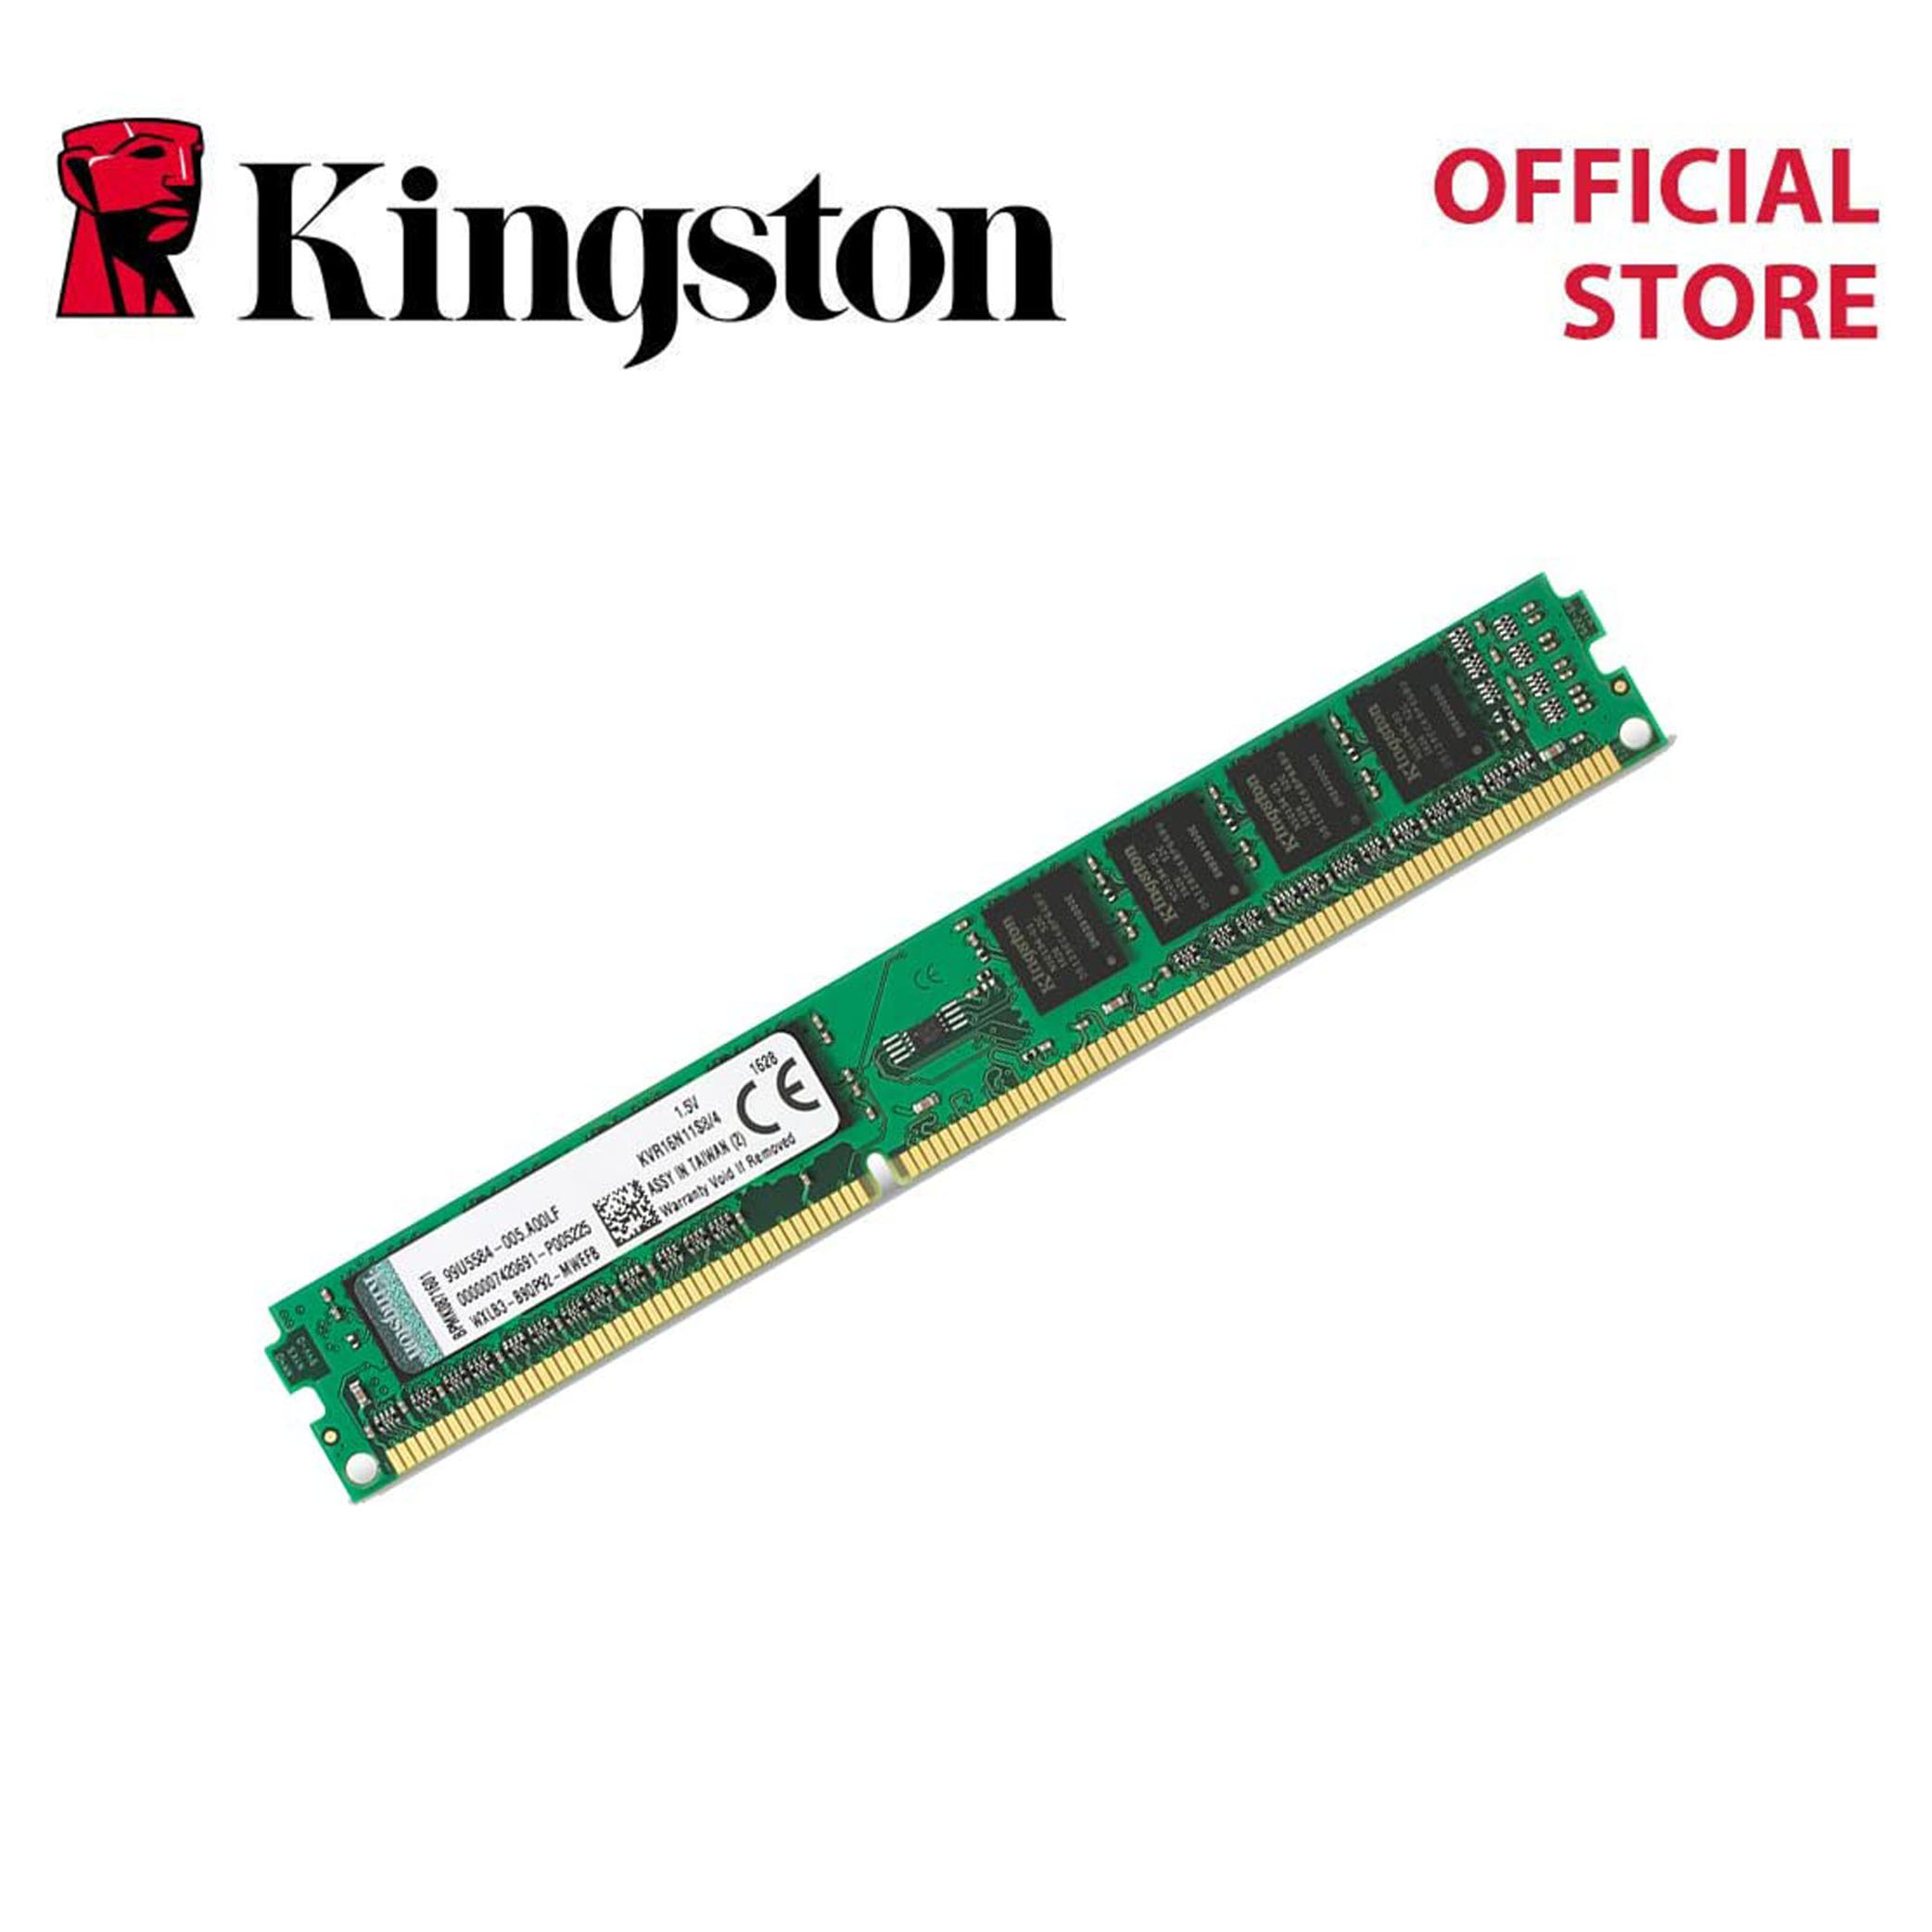 2425円 売れ筋ランキングも メーカー取り寄せ キングストン 増設メモリ 4GB 1600MHz DDR3 Non-ECC CL11 SODIMM 1Rx8 KVR16S11S8 4 製品寿命期間保証 Kingston 新生活